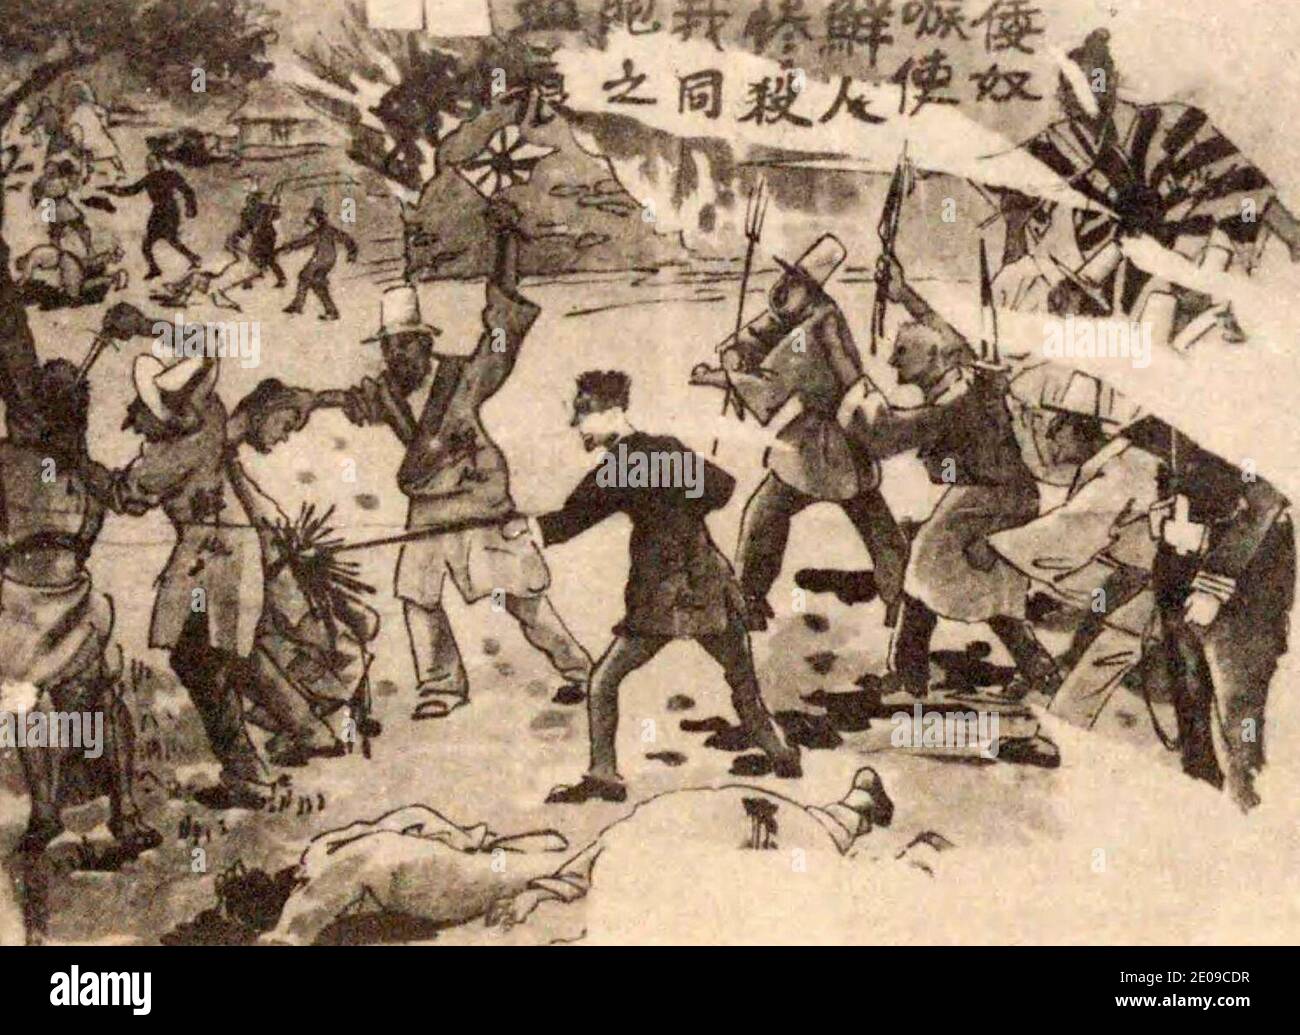 Affiche anti-japonaise chinoise publiée après la vengeance des Coréens. Juillet 1931 Banque D'Images